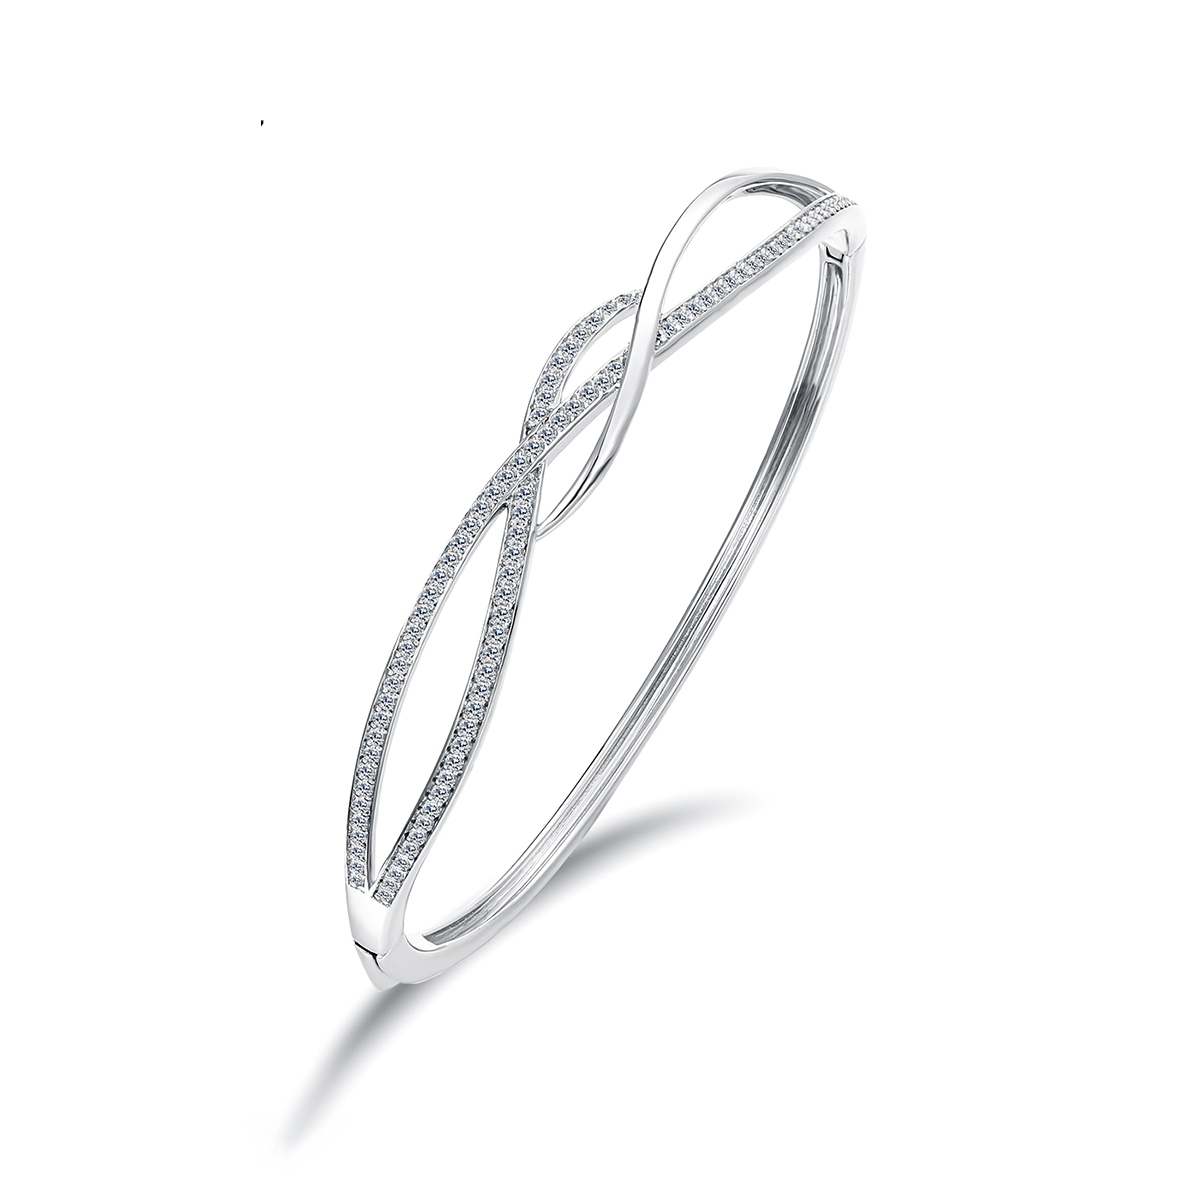 SB047椭圆形铰链手镯密镶锆晶模拟钻石925银镀銠